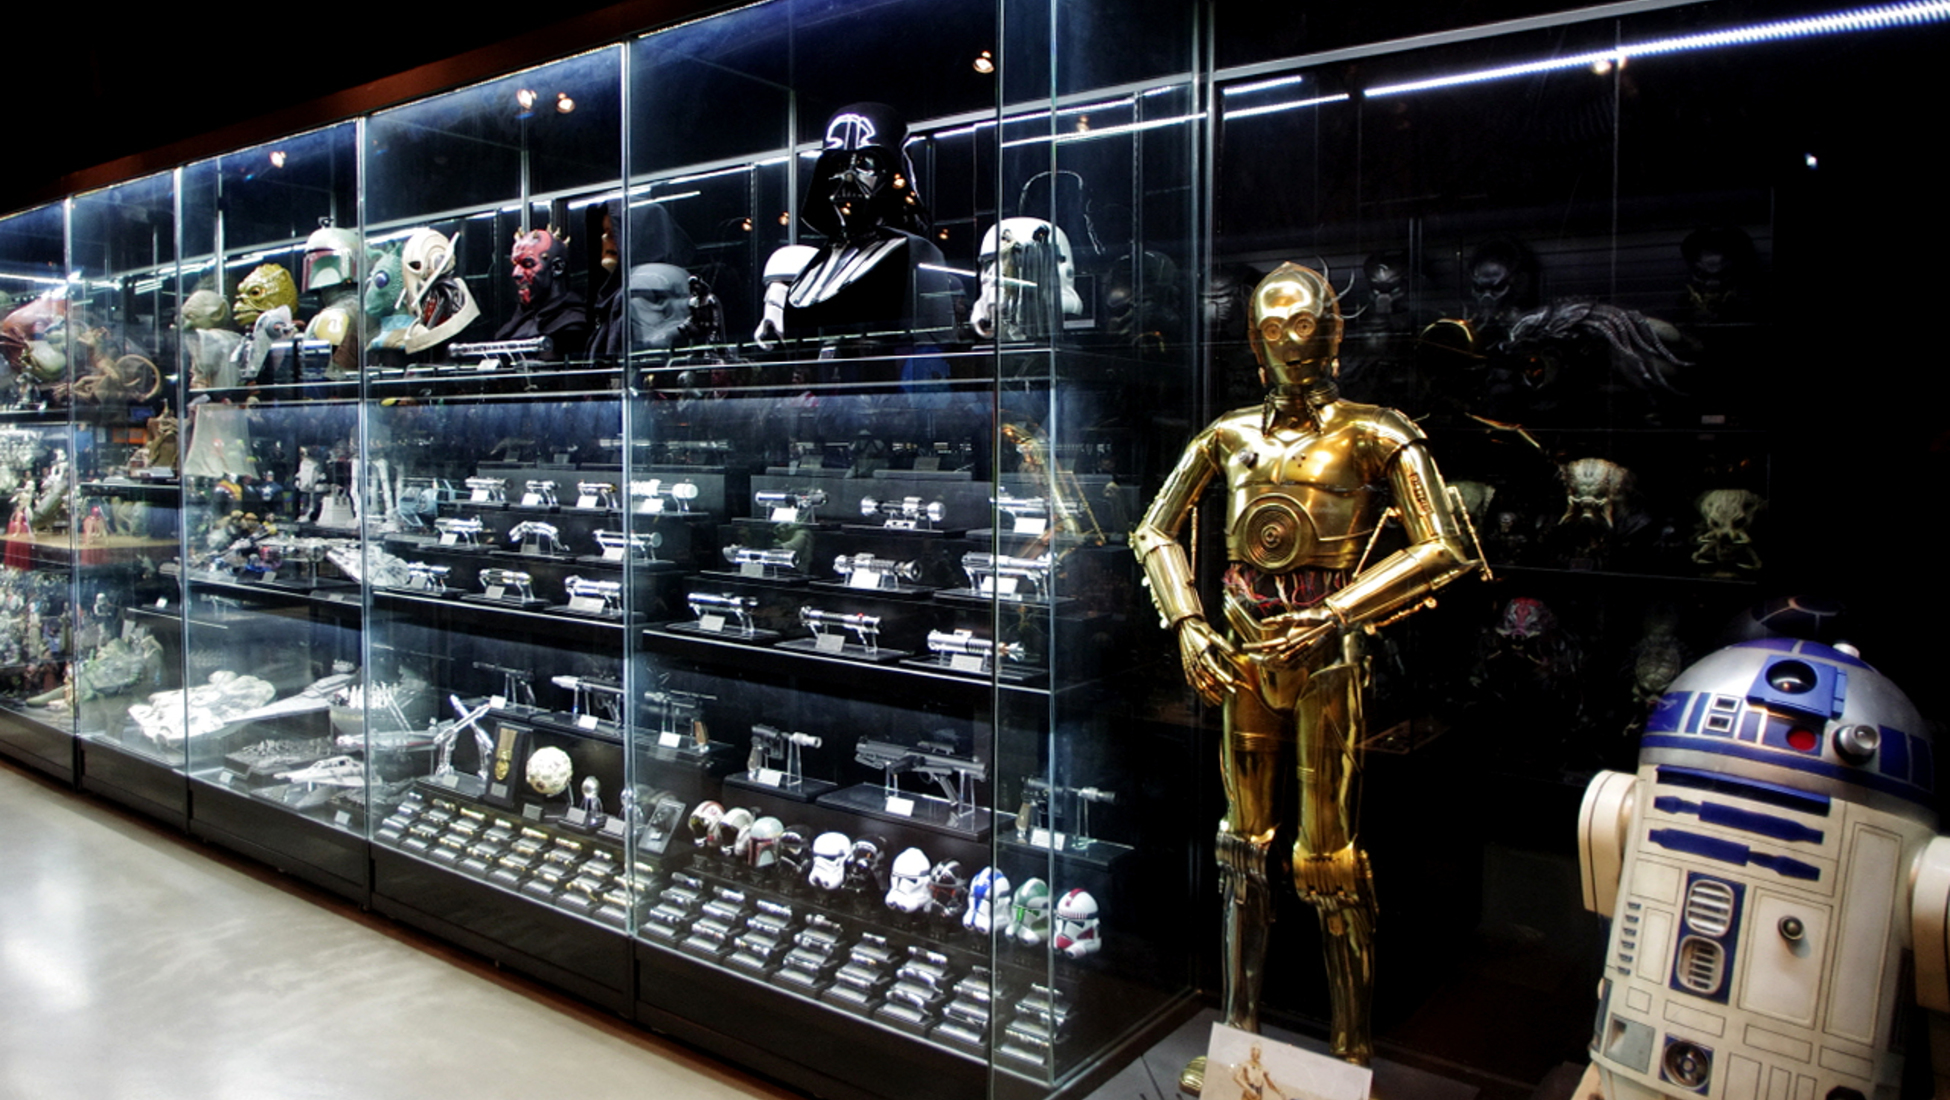 Star wars memorabilia collectors